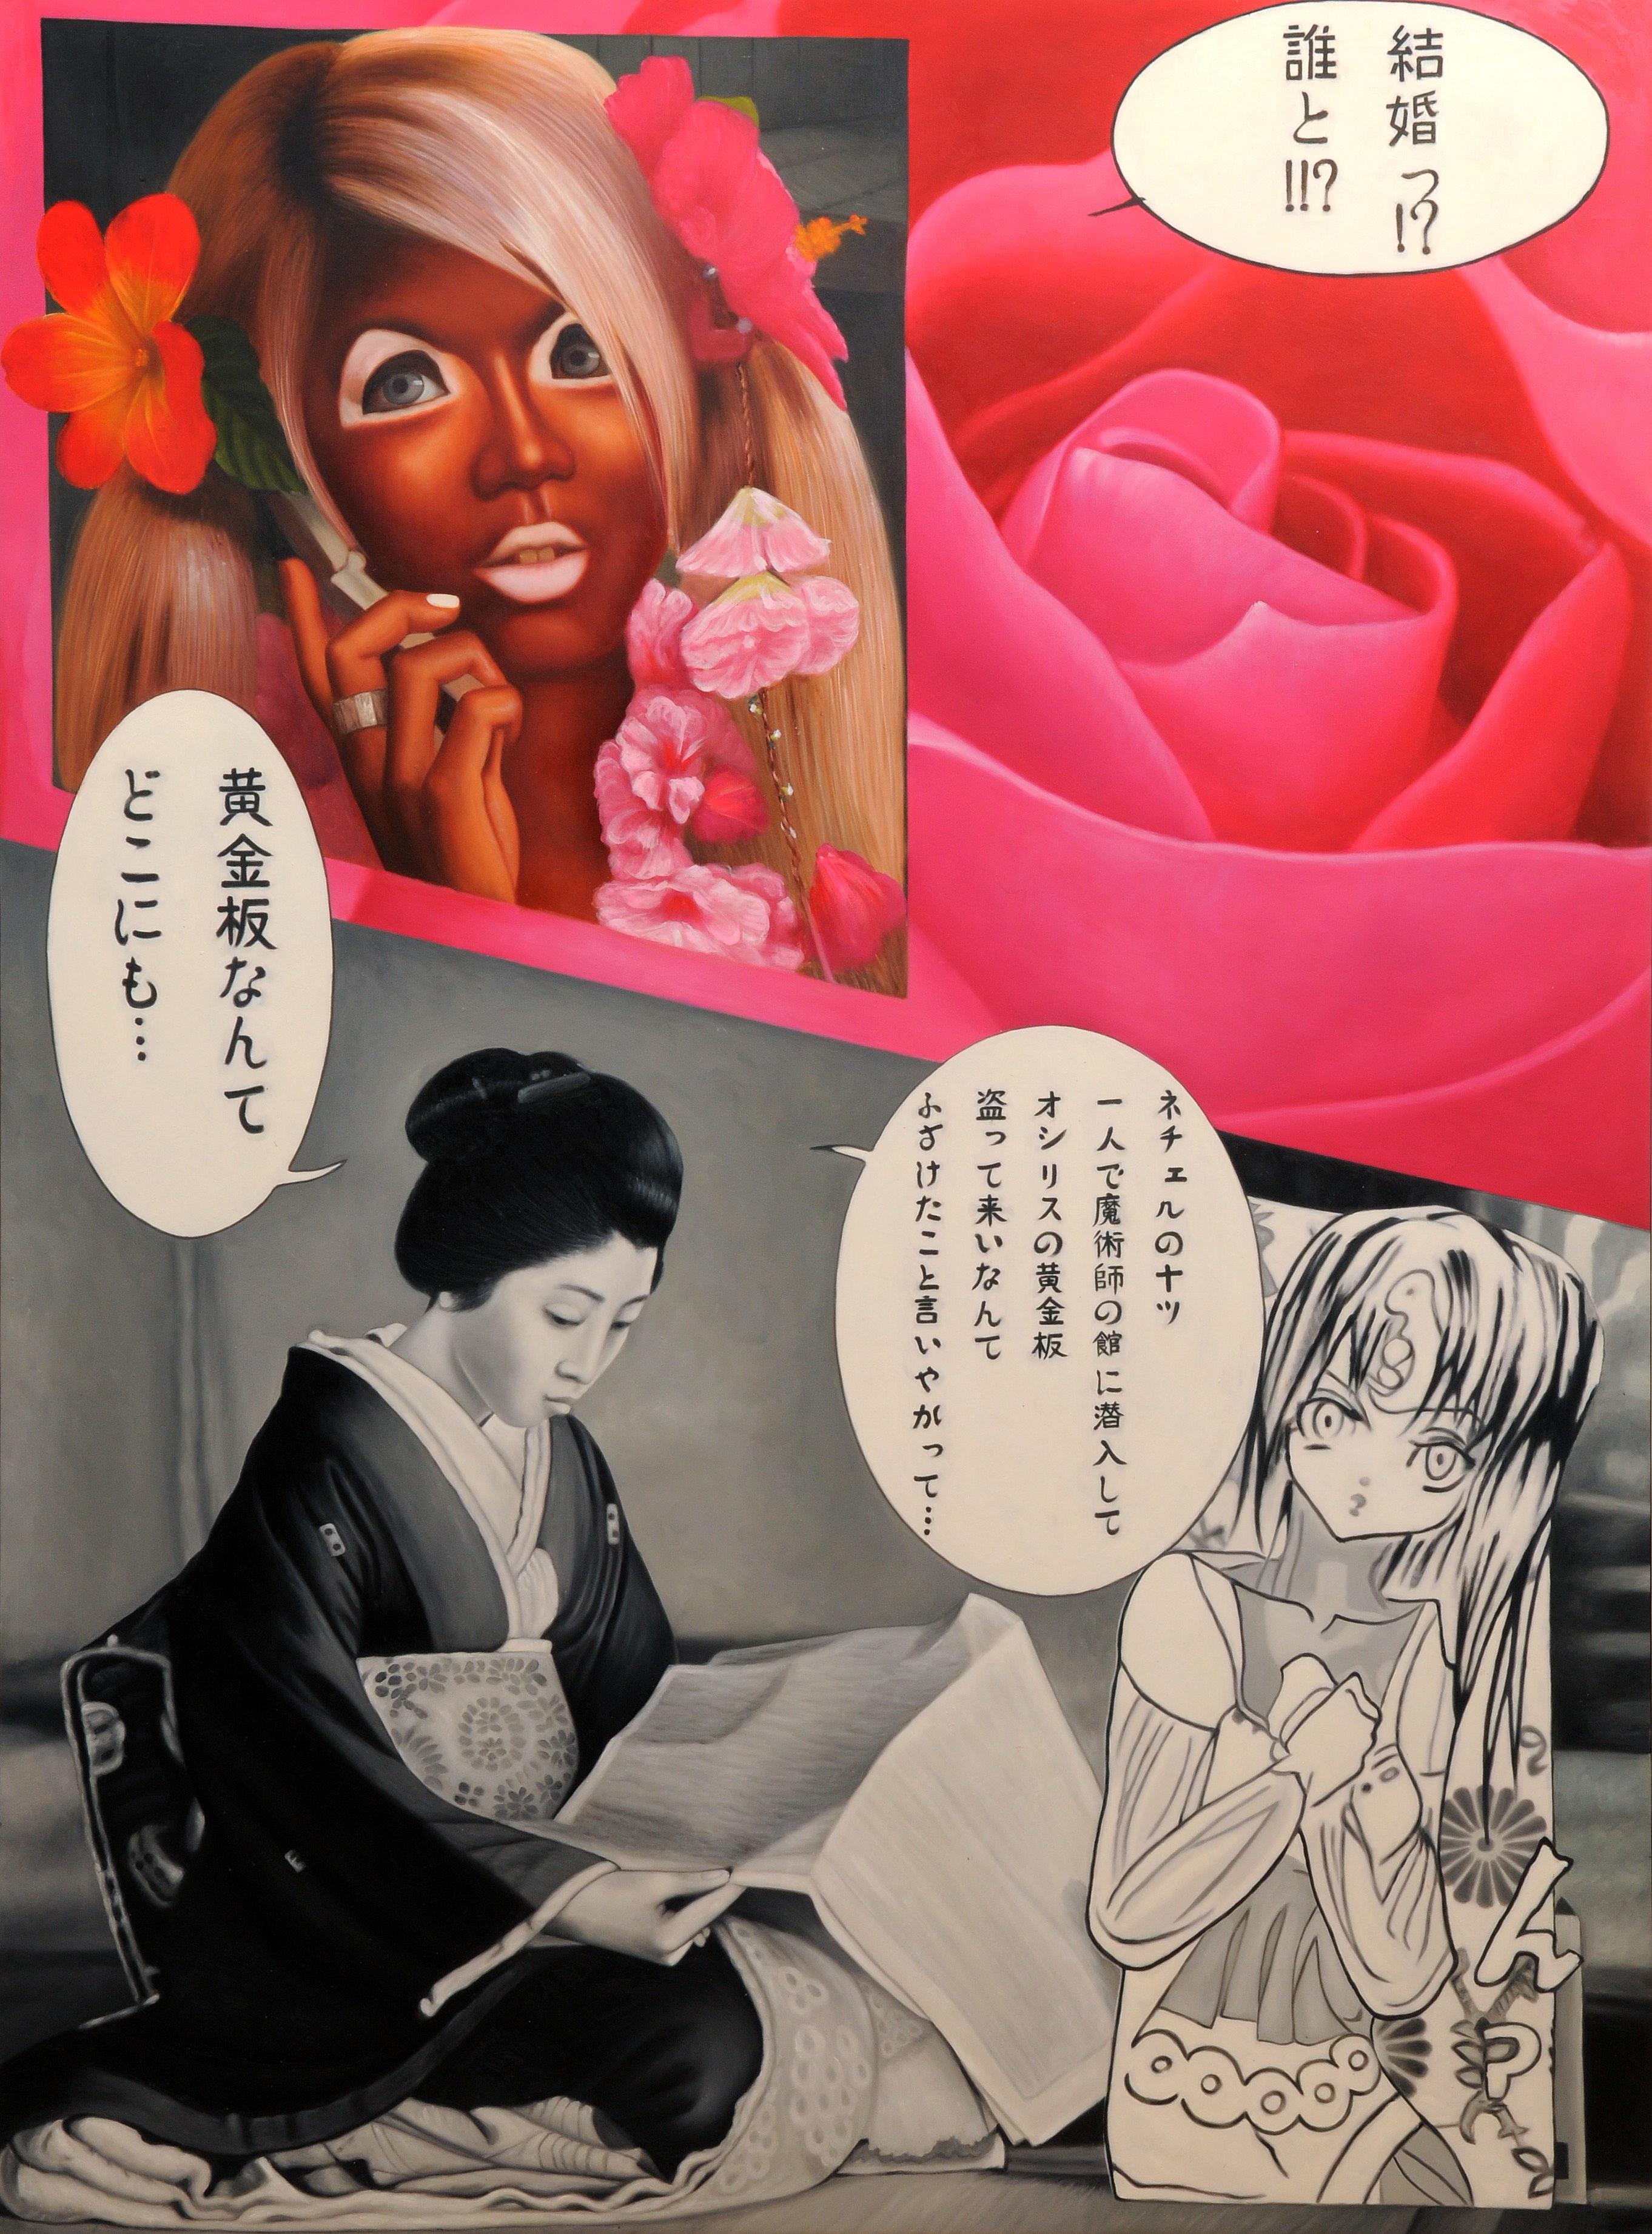 Pink Ganjuro : Kabuki Revival, Ganjuro in a Palette of Pink - Painting by JIMMY YOSHIMURA